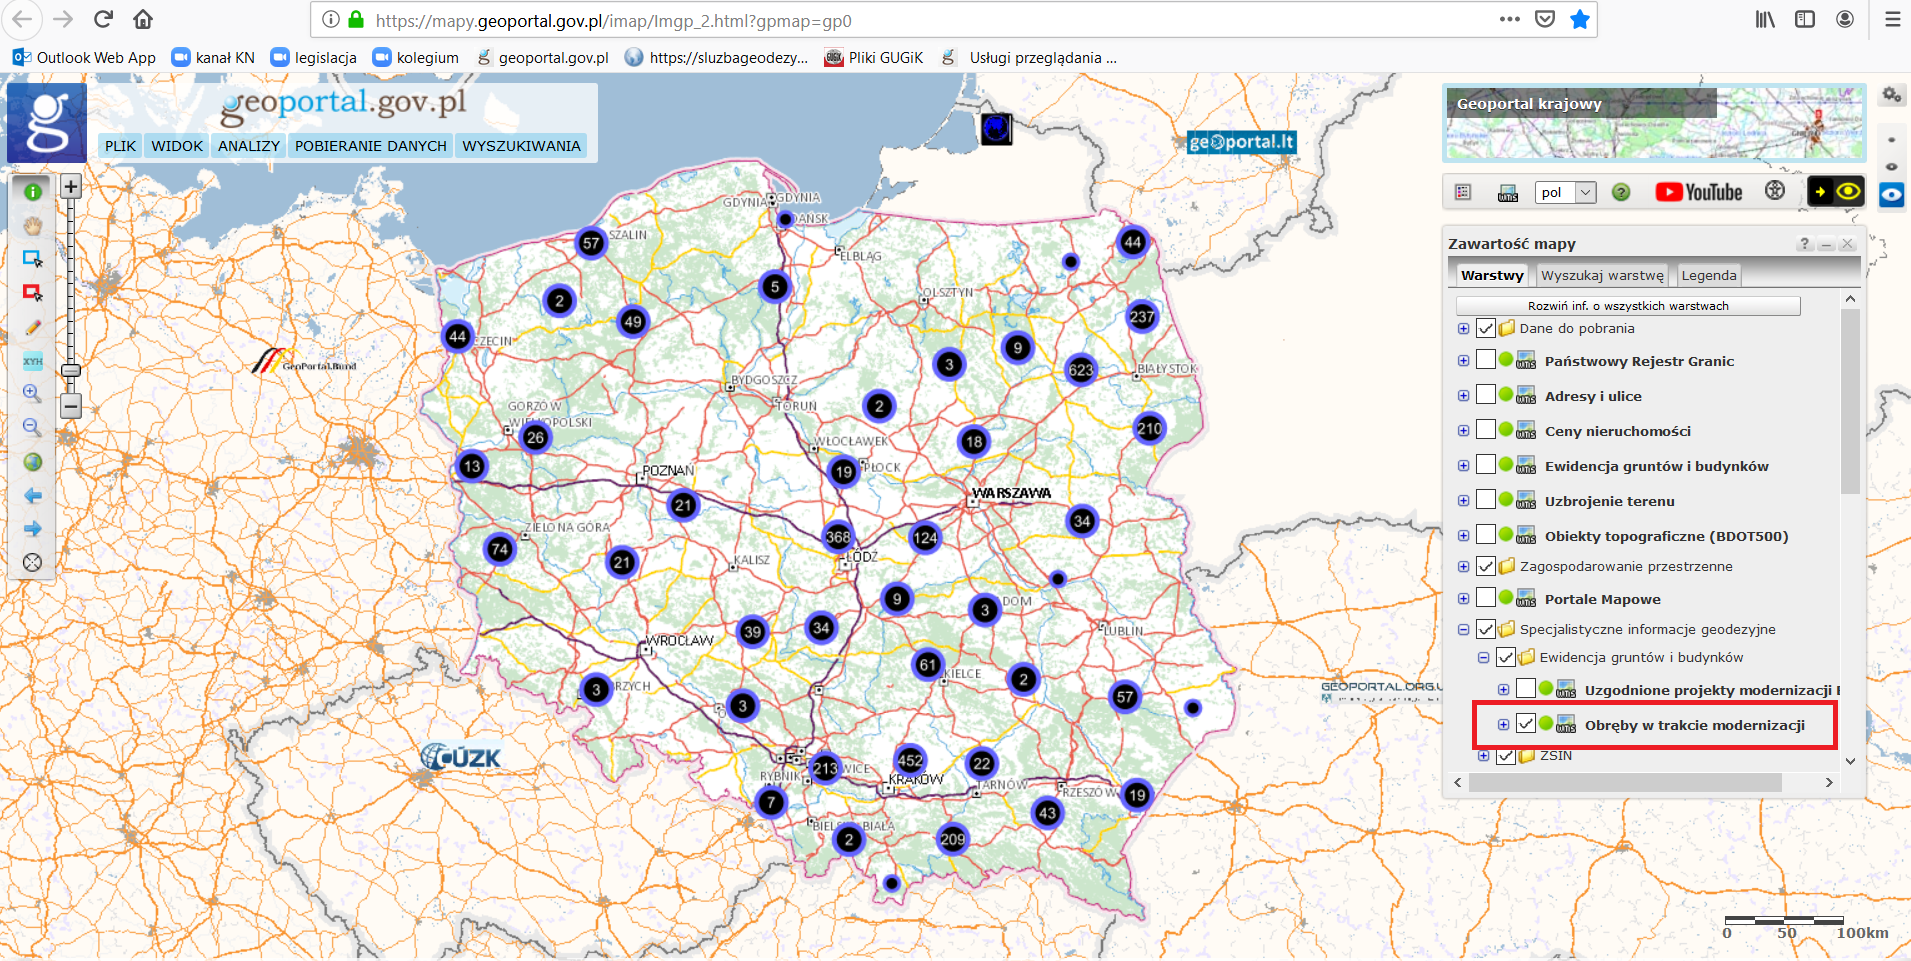 Ilustracja przedstawia zrzut ekranu z serwisu www.geoportal.gov.pl prezentujący warstwę „Obręby w trakcie modernizacji”.